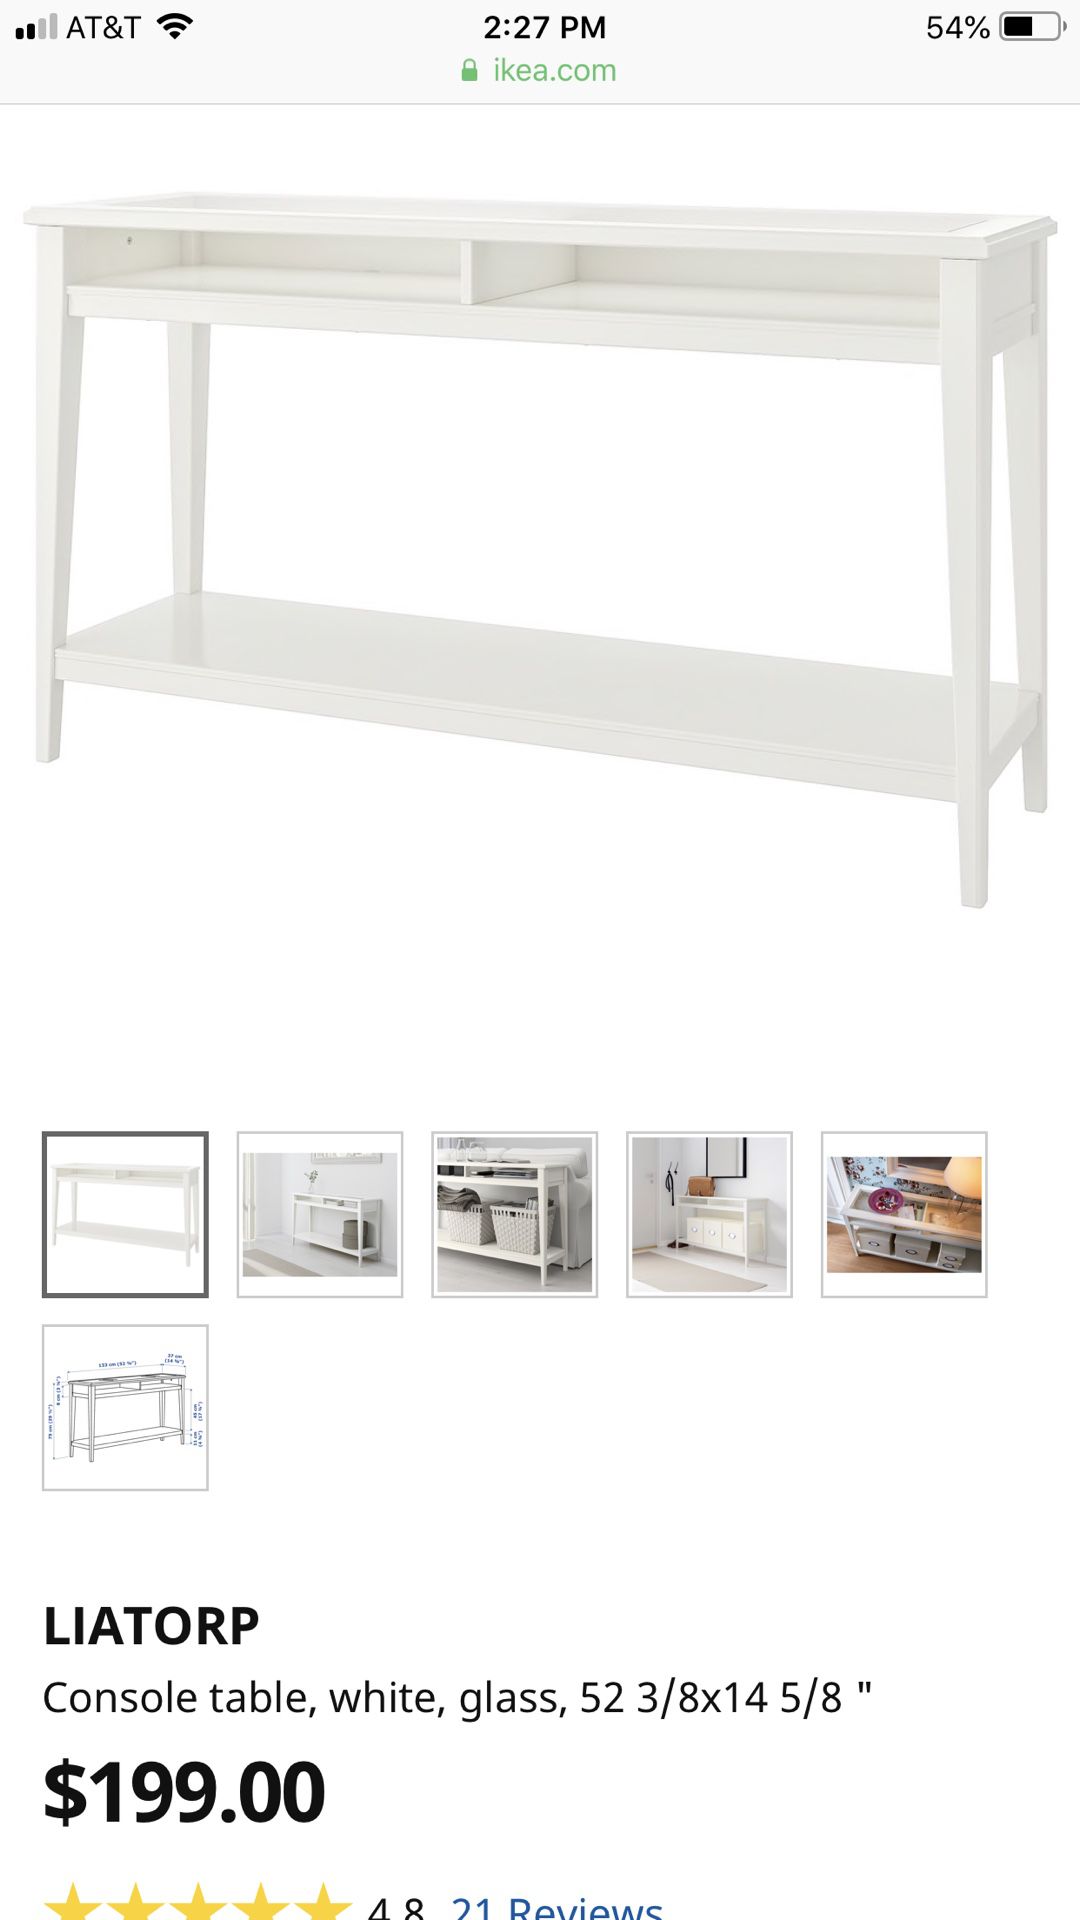 Ikea console table